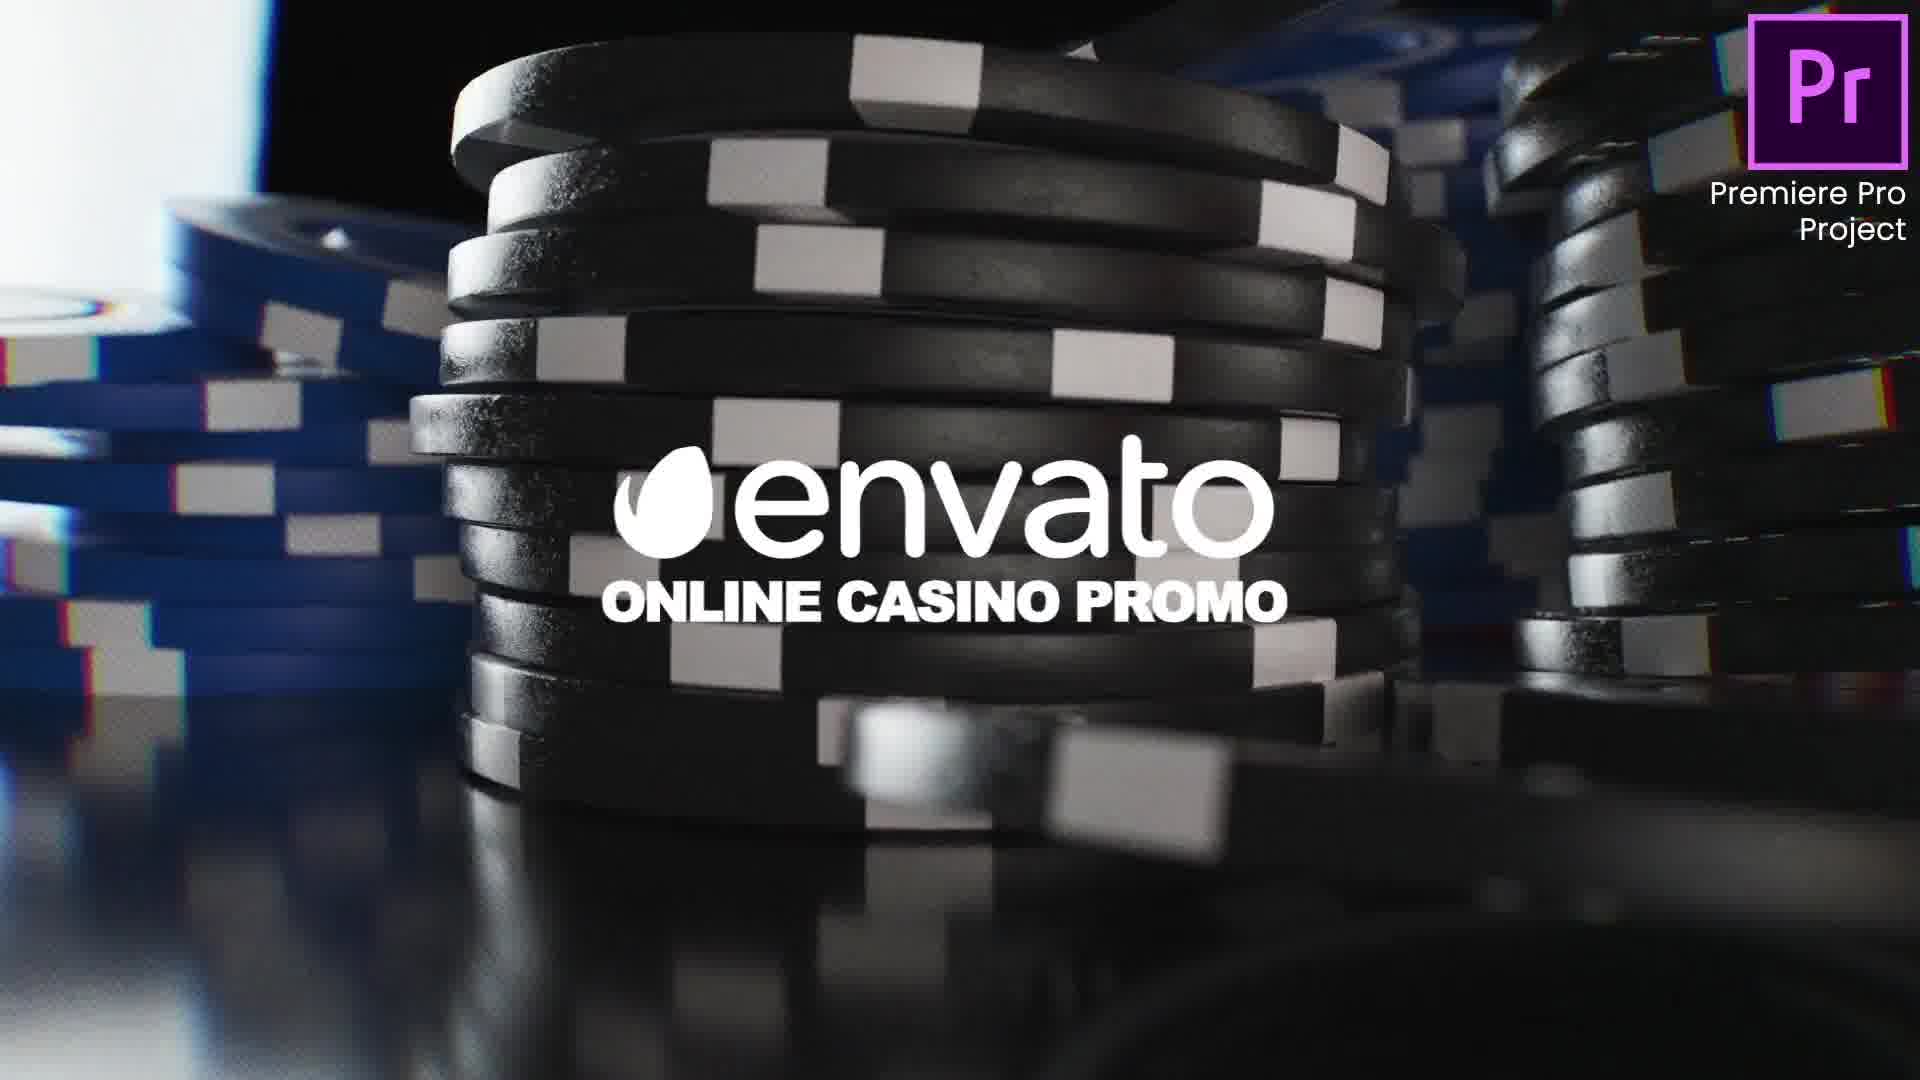 Online Casino Promo |Online Roulette Intro | Slot Machine Game| Poker App| Premiere Pro Videohive 33948684 Premiere Pro Image 12